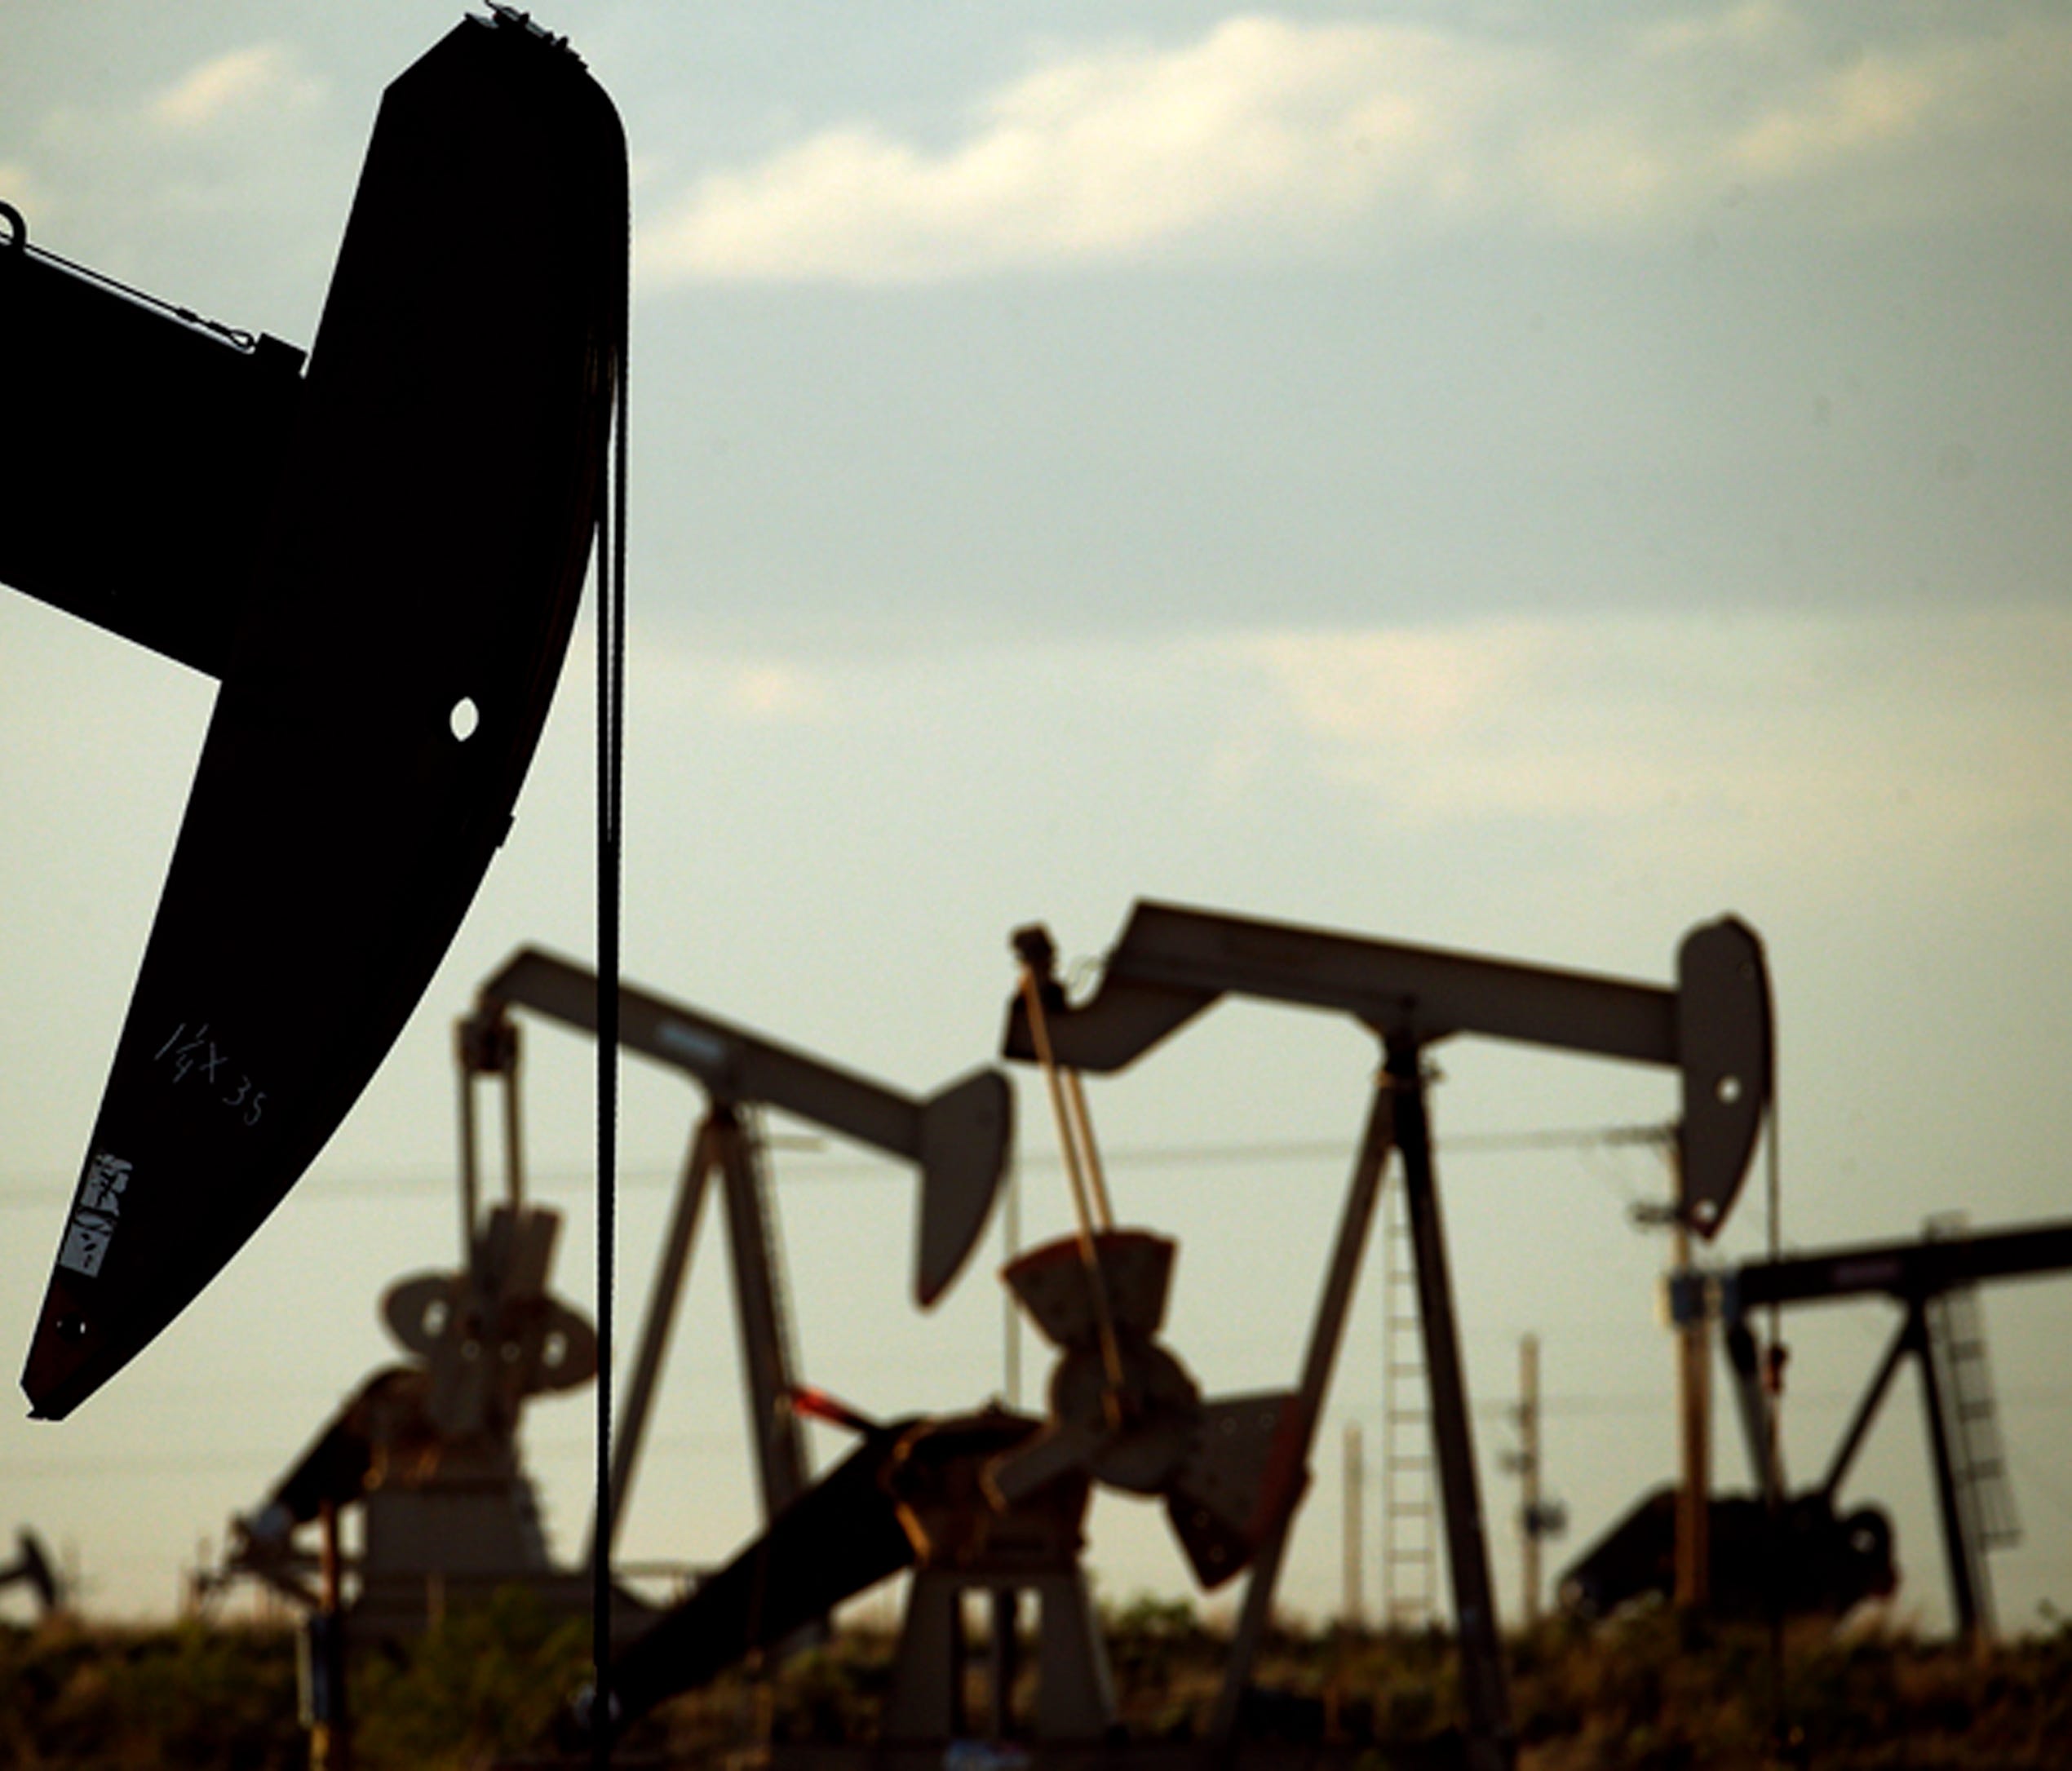 File photo taken in 2015 shows oil pumpjacks working in a field near Lovington, New Mexico.